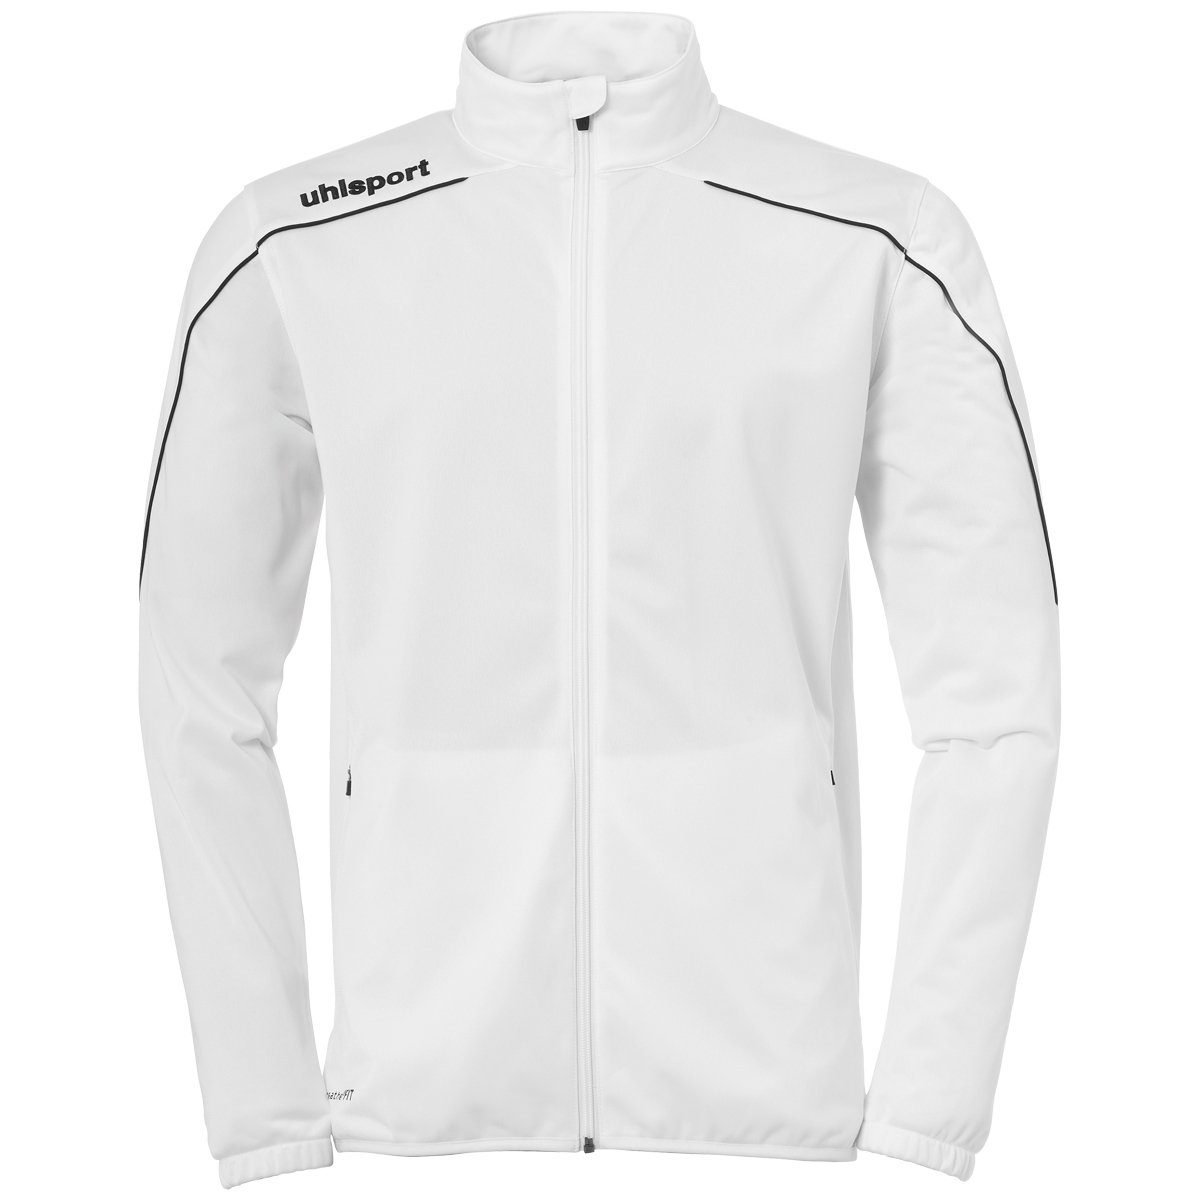 Trainingsjacke uhlsport STREAM 22 weiß/schwarz uhlsport Trainingsjacke